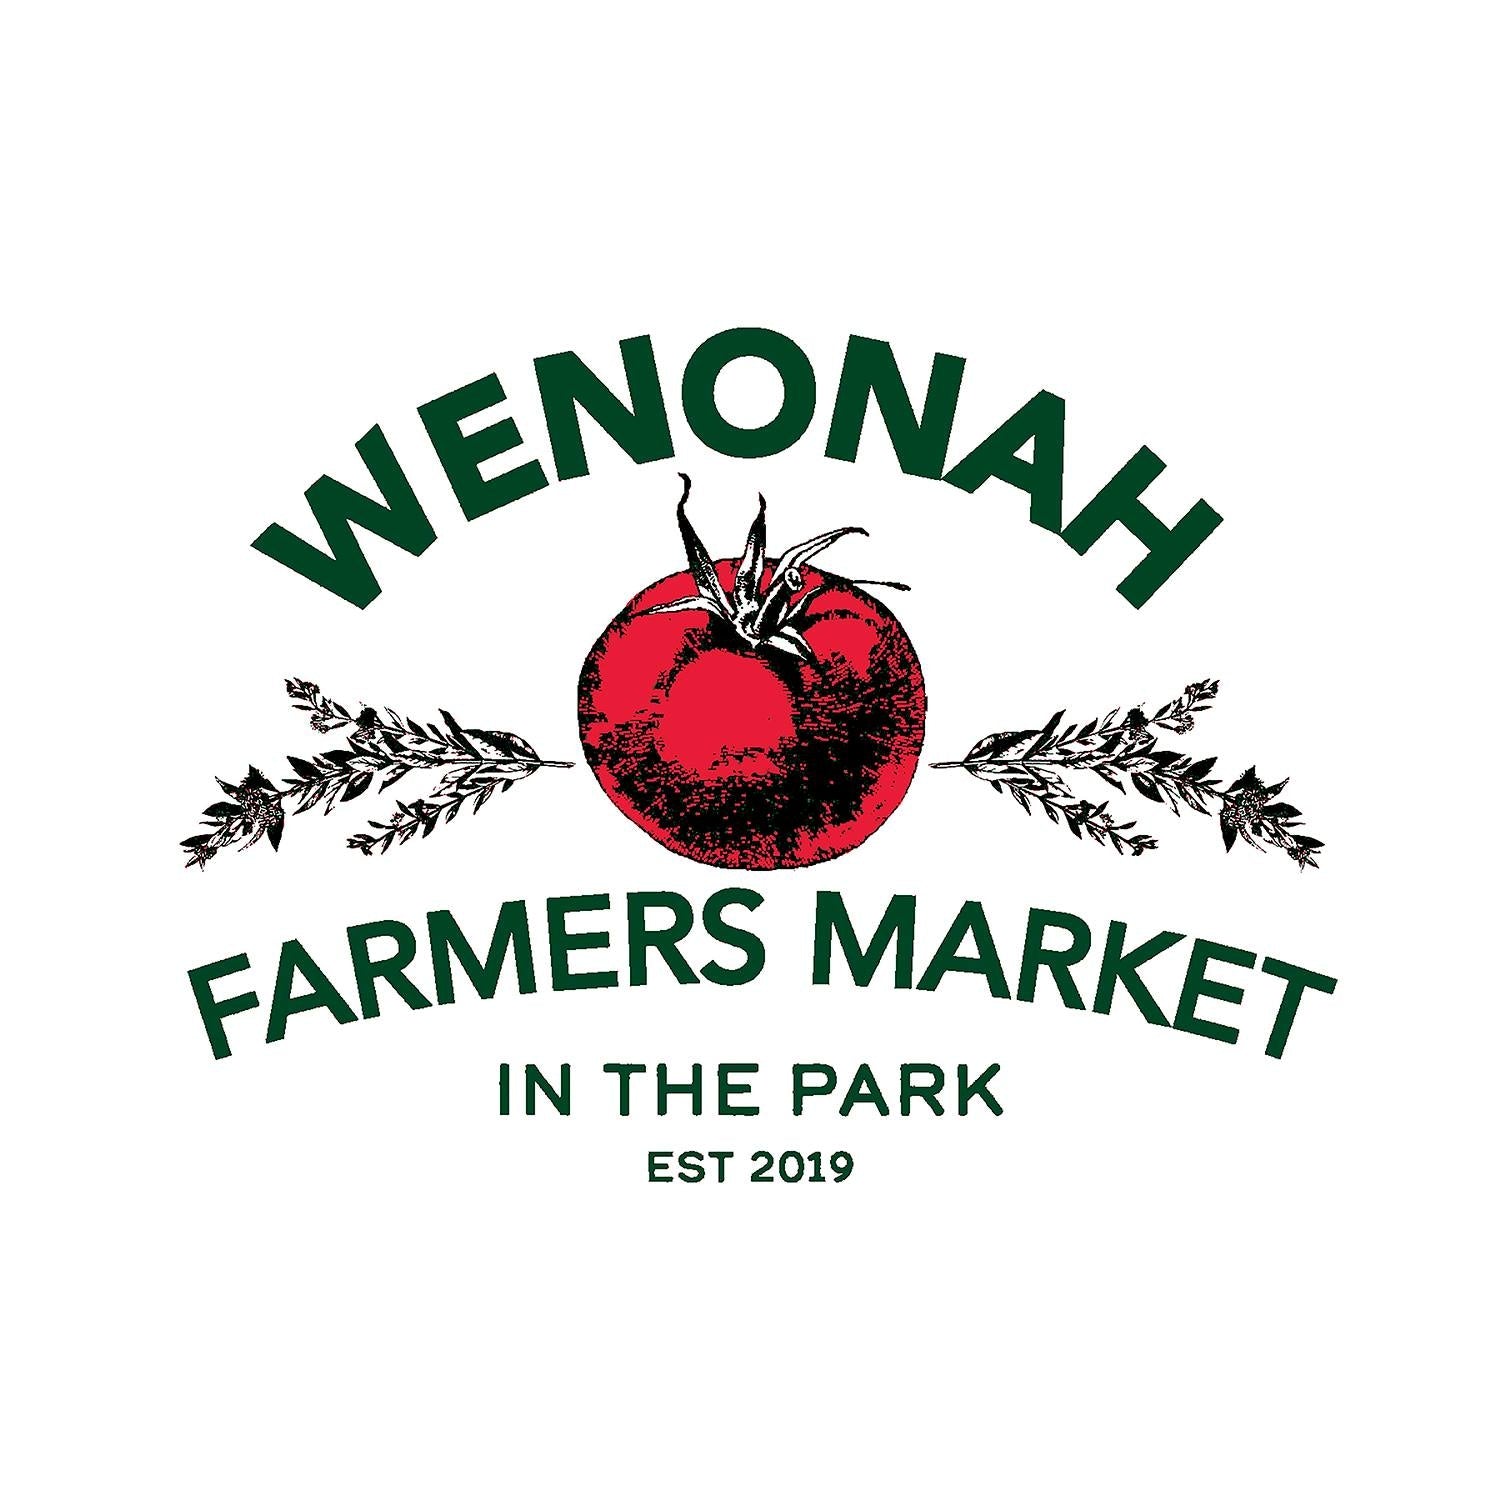 Wenonah Farmer's Market July 13th